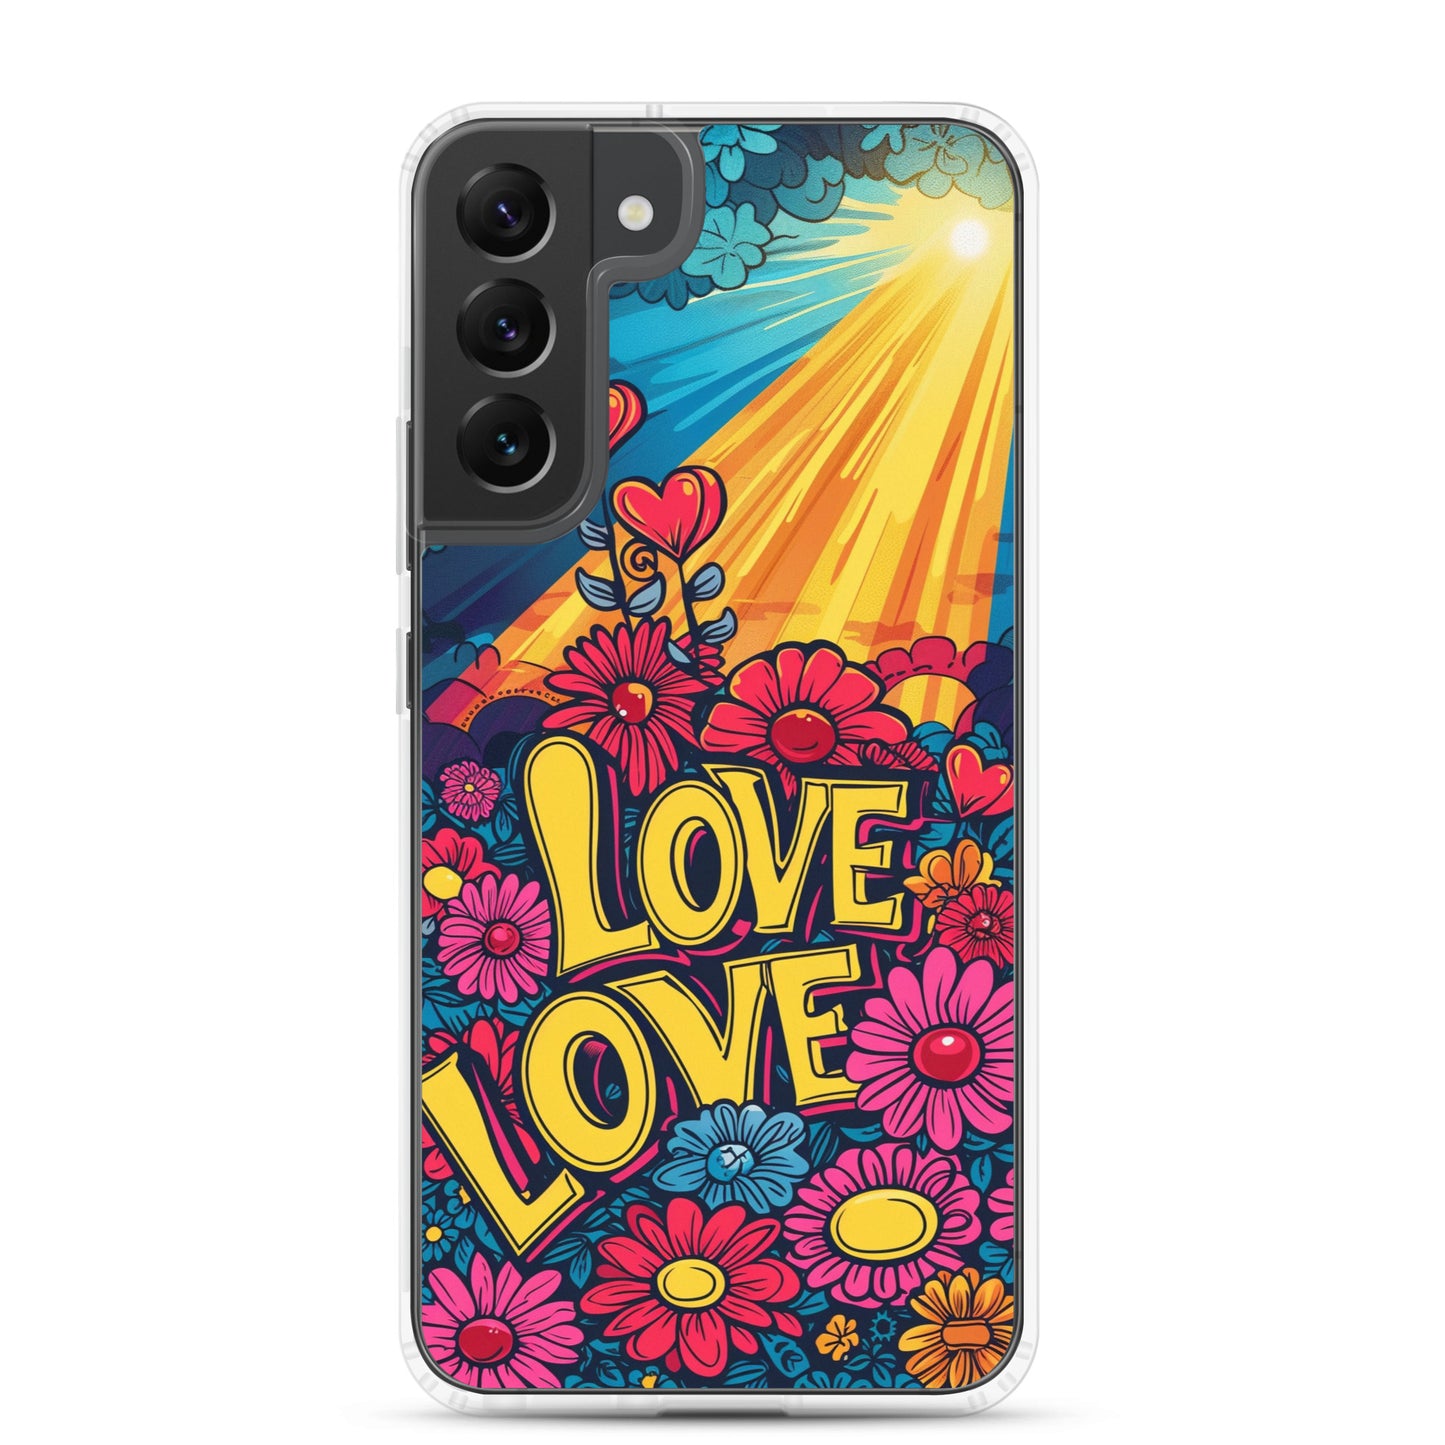 Samsung Case - Radiant Affection